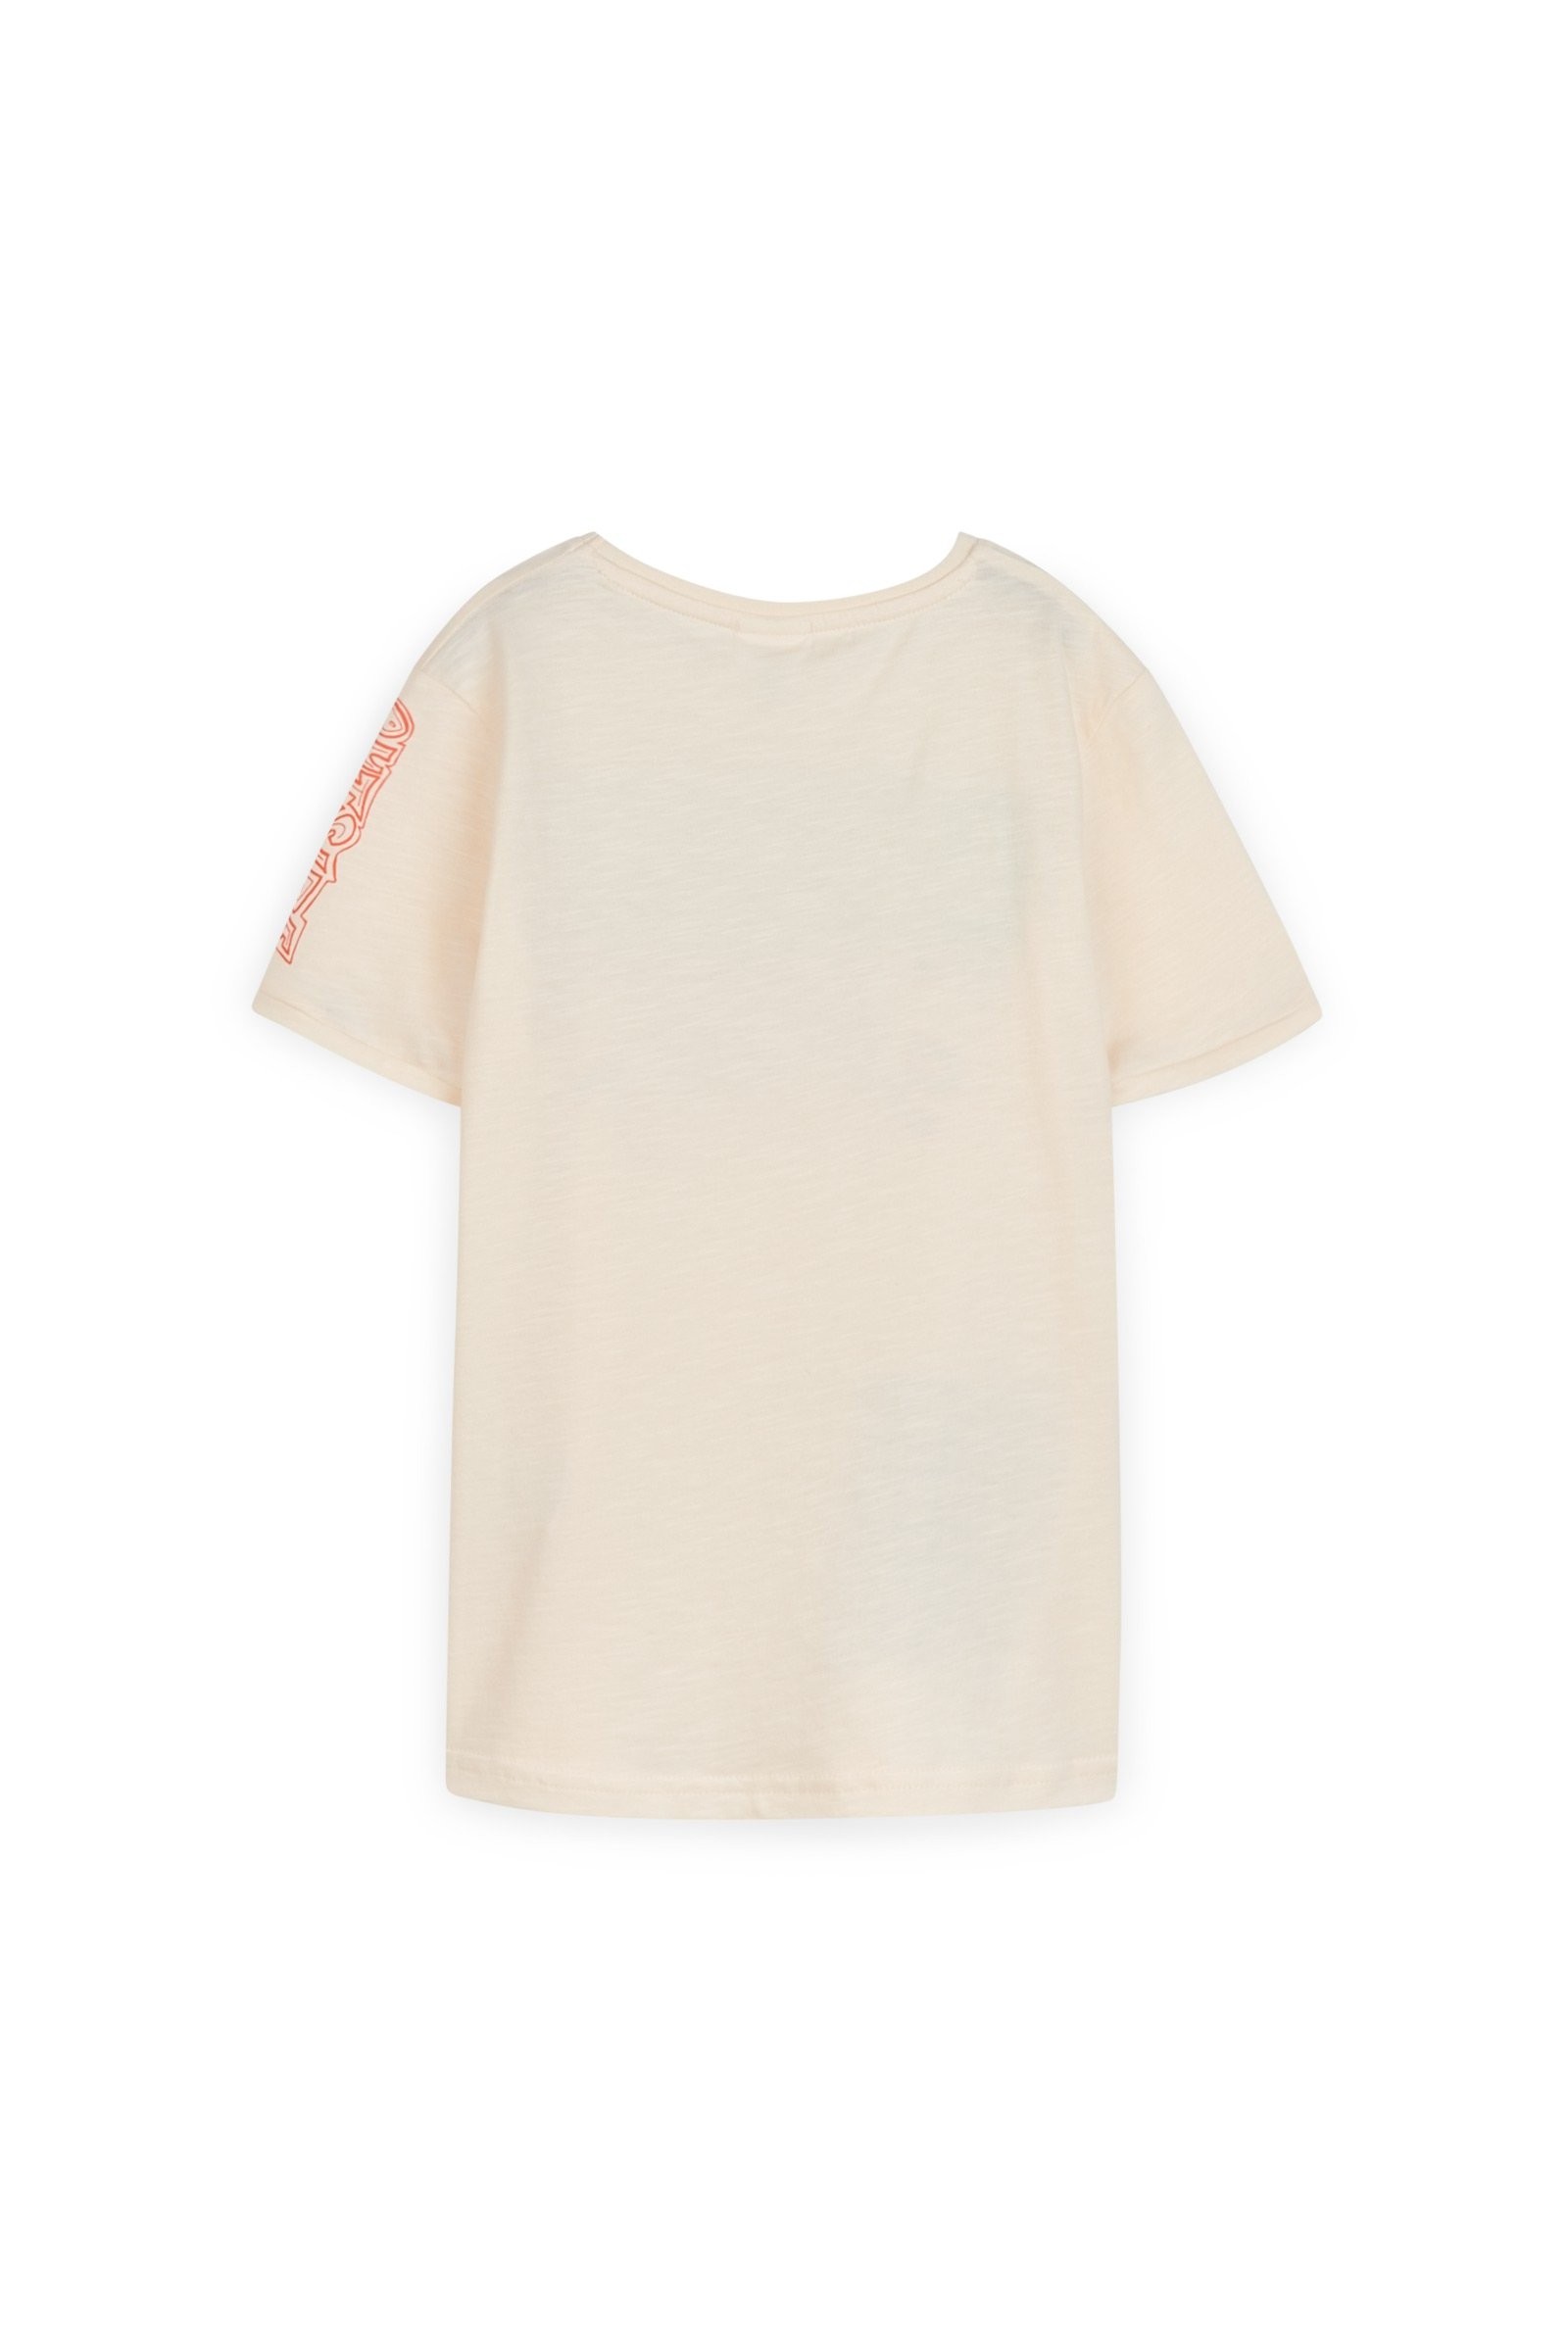 CKS Kids - YEDGAR - T-Shirt Kurzarm - Weiß